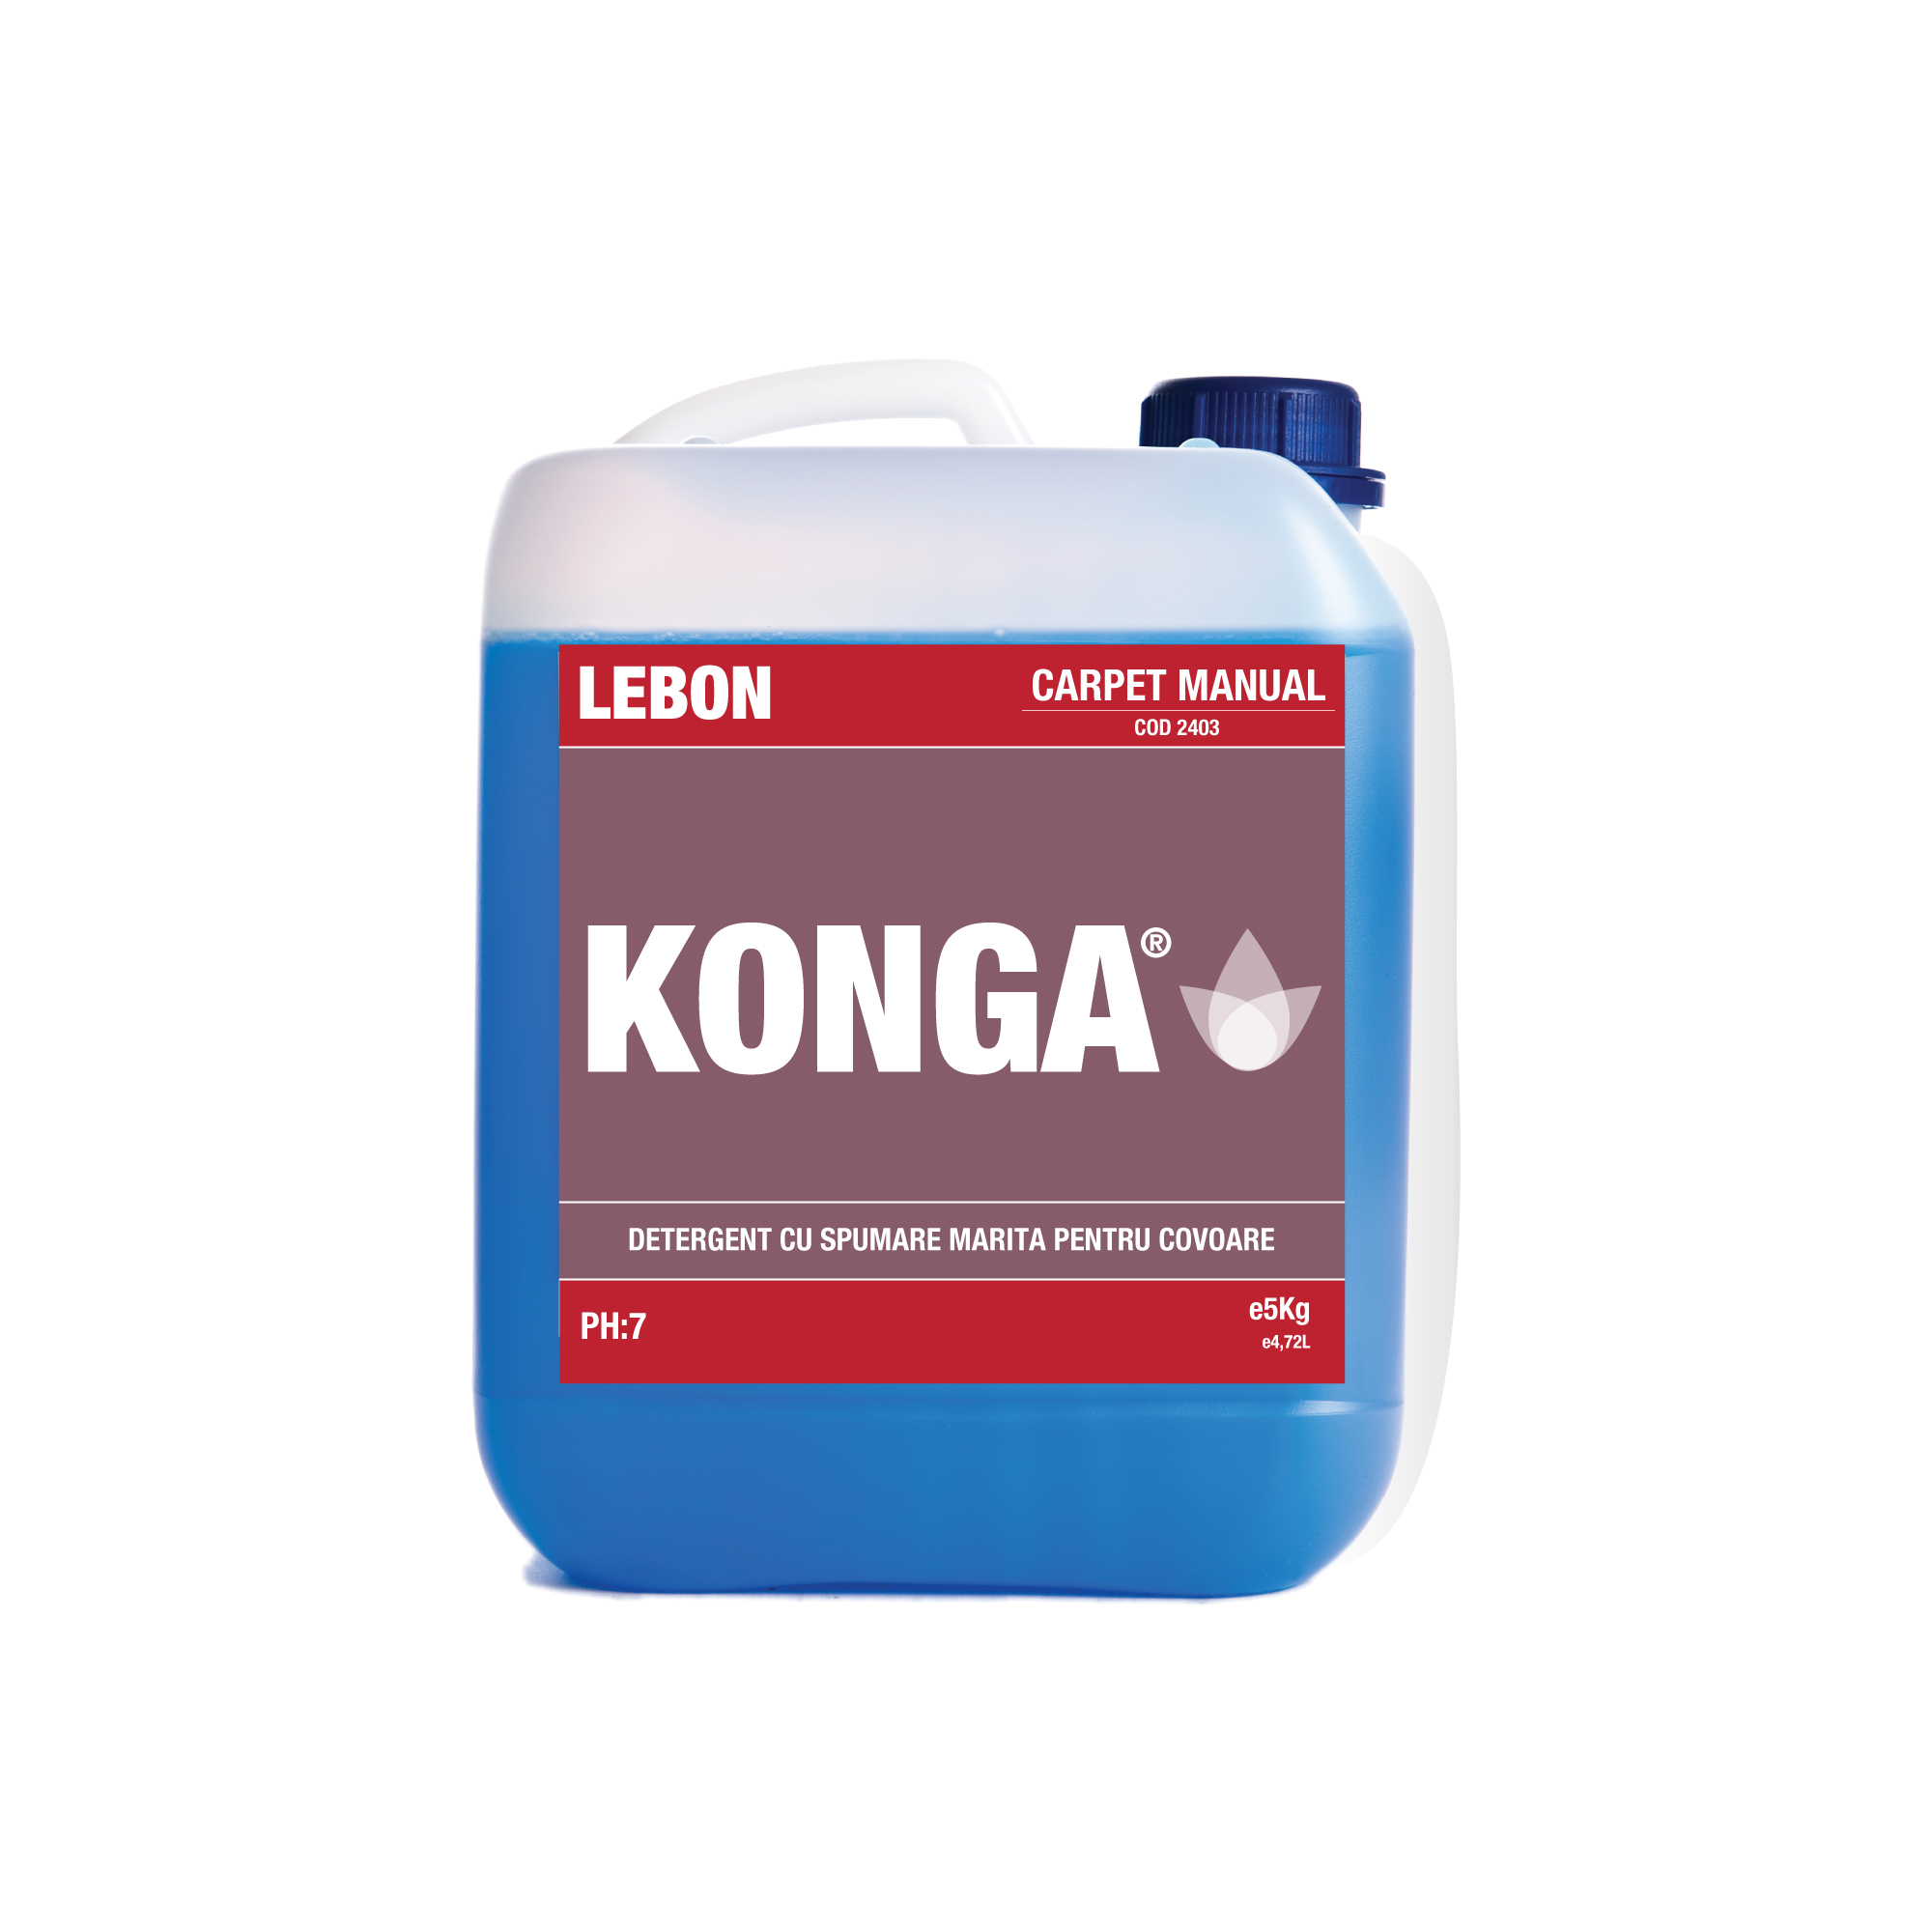 Detergent mochete covoare – Carpet Manual Konga